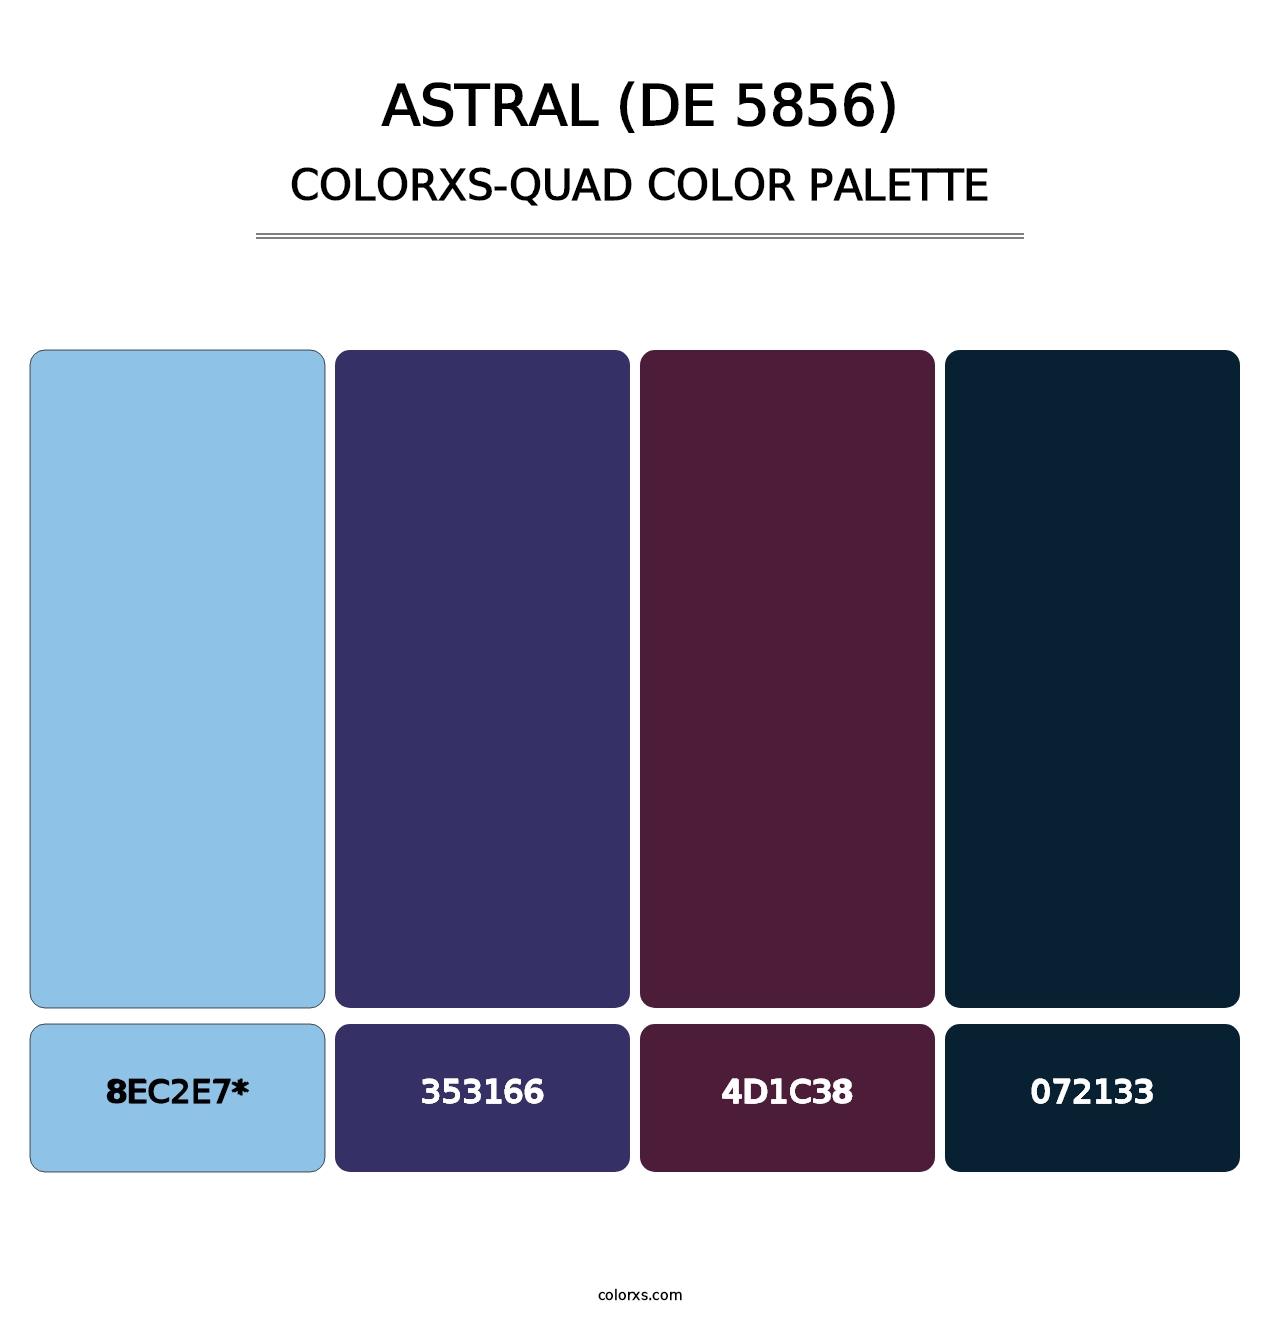 Astral (DE 5856) - Colorxs Quad Palette